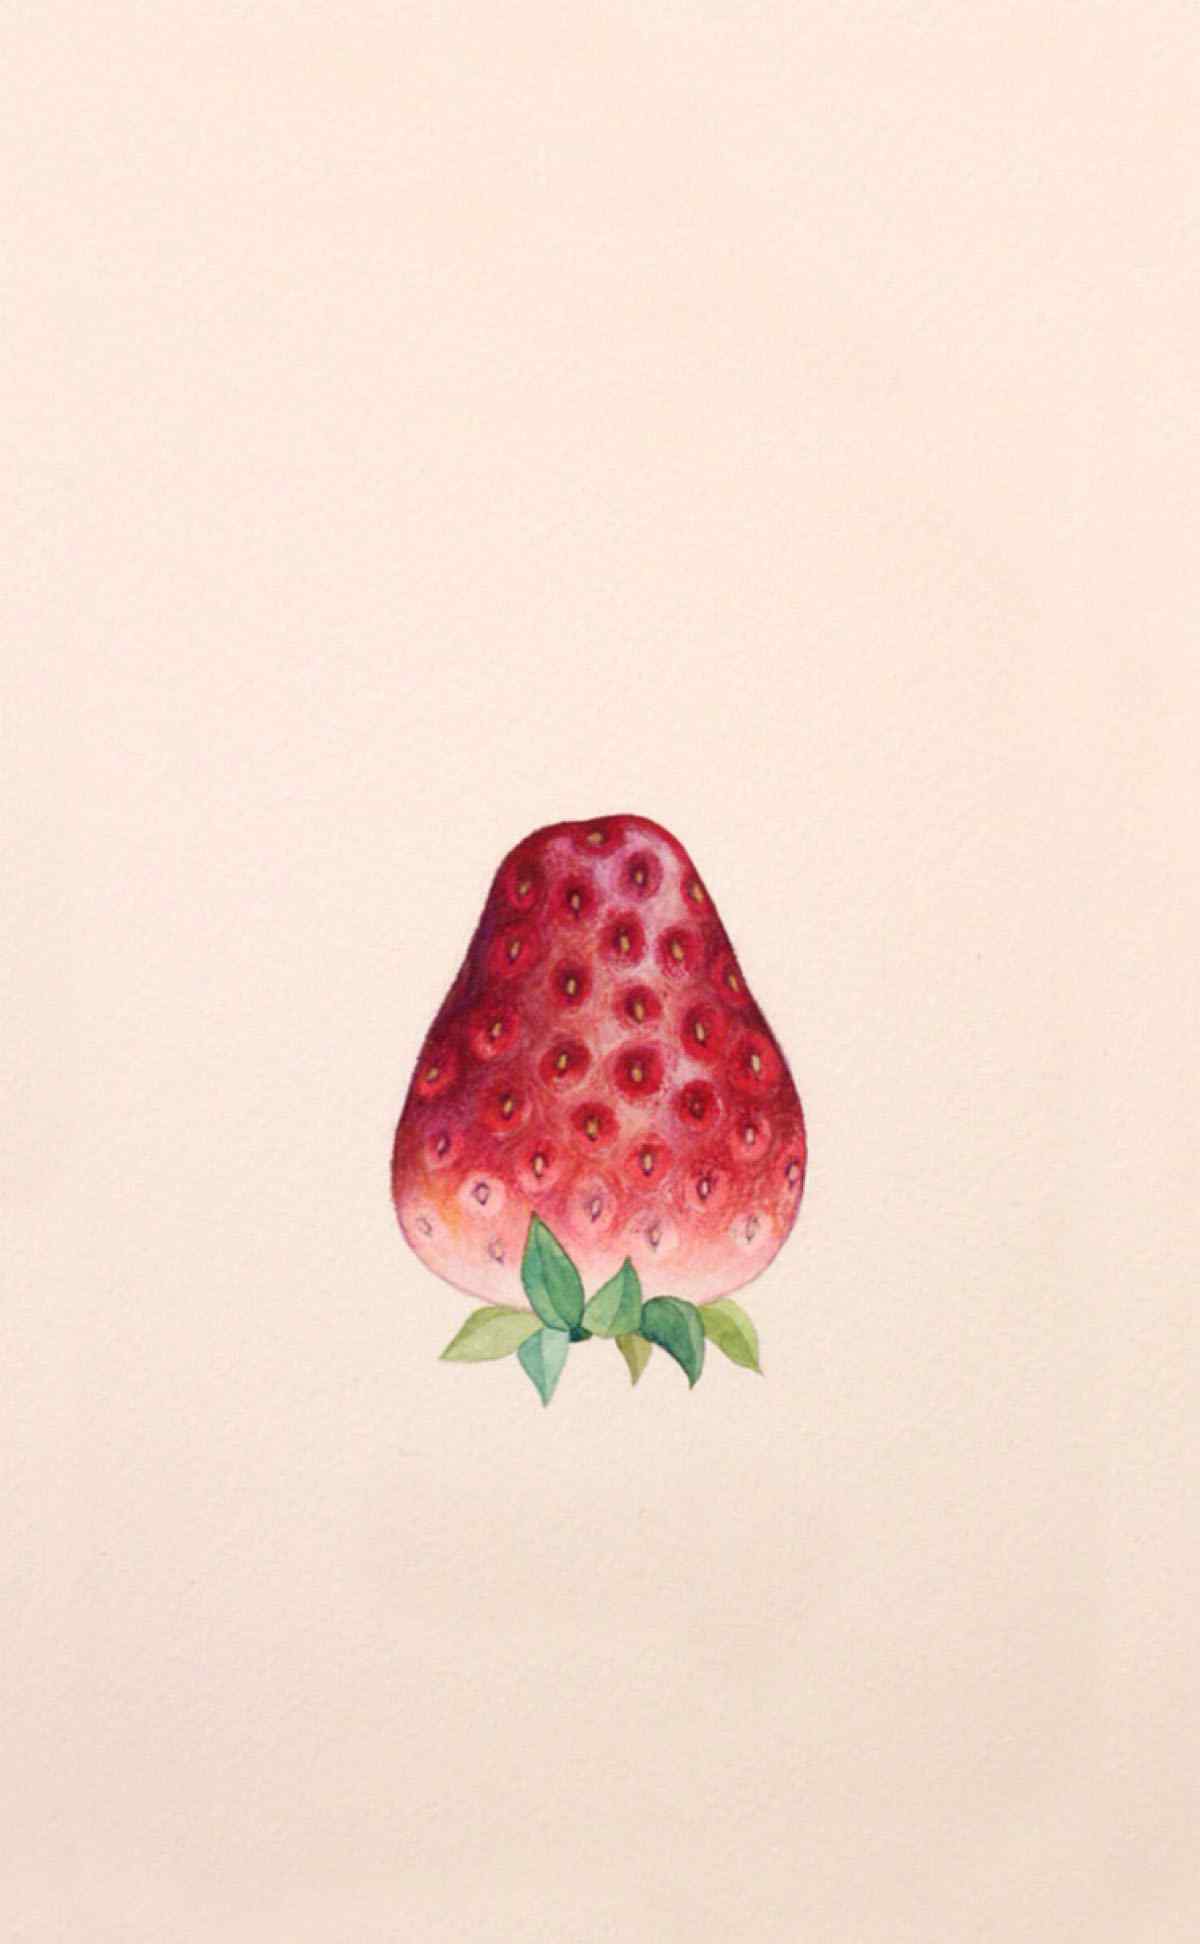 一颗草莓清新可爱手机壁纸